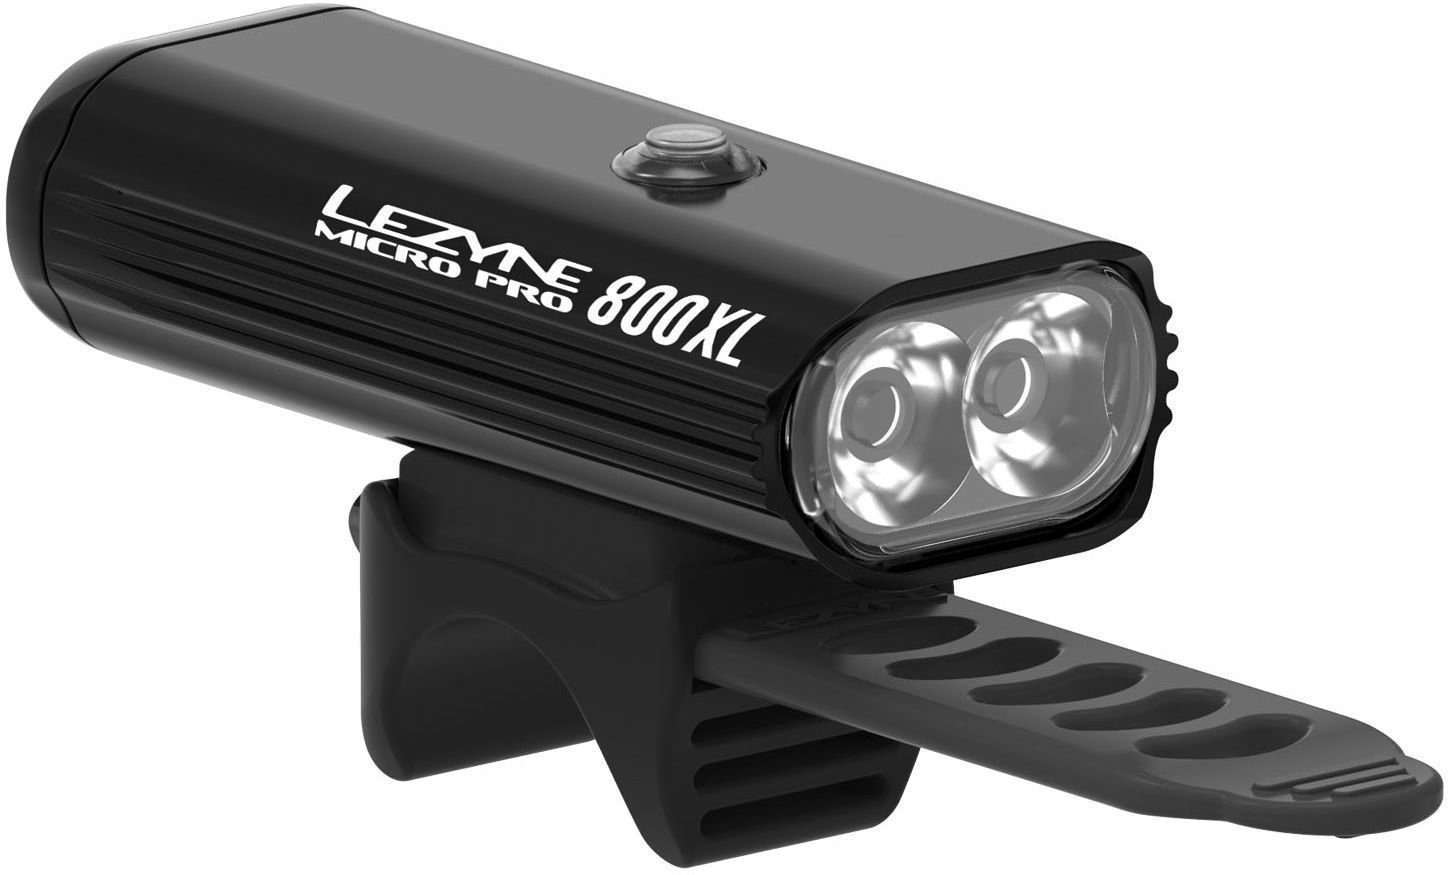 Vorderlicht Lezyne Micro Drive Pro 800 lm Black/Hi Gloss Vorderlicht